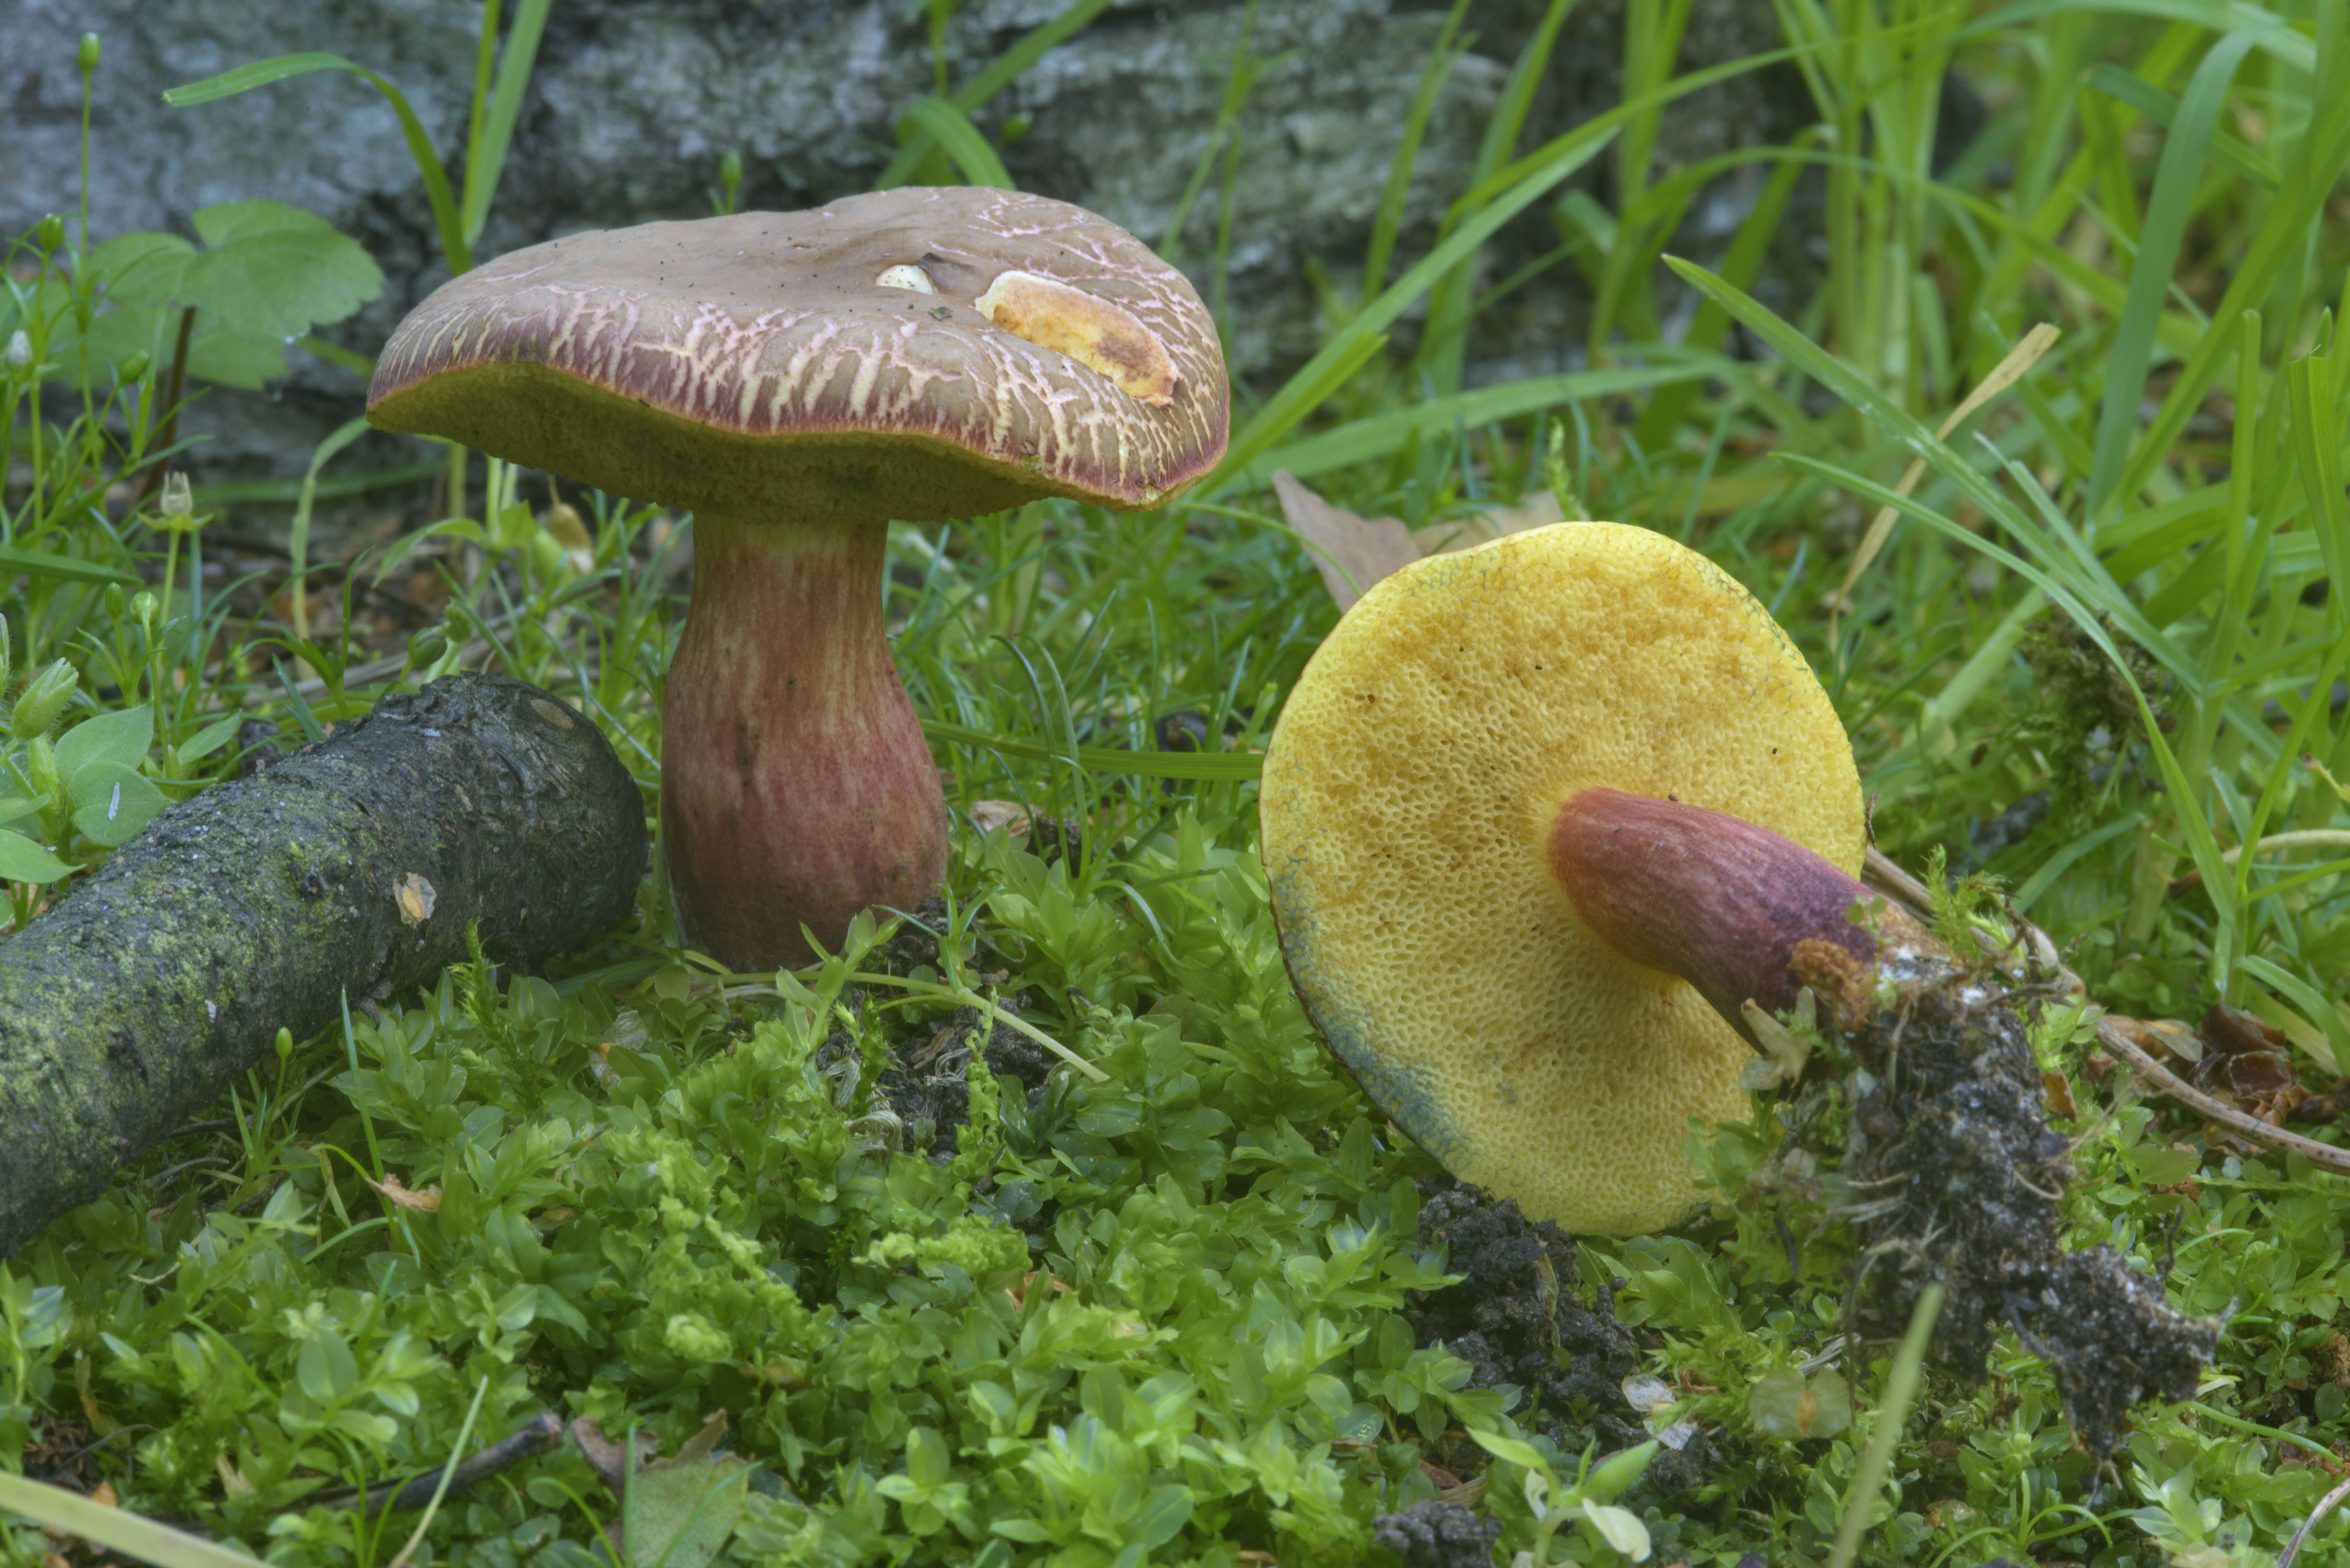 Есть гриб желчный. Xerocomus chrysenteron. Моховик гриб. Моховик каштановый польский гриб. Желчный гриб горчак.